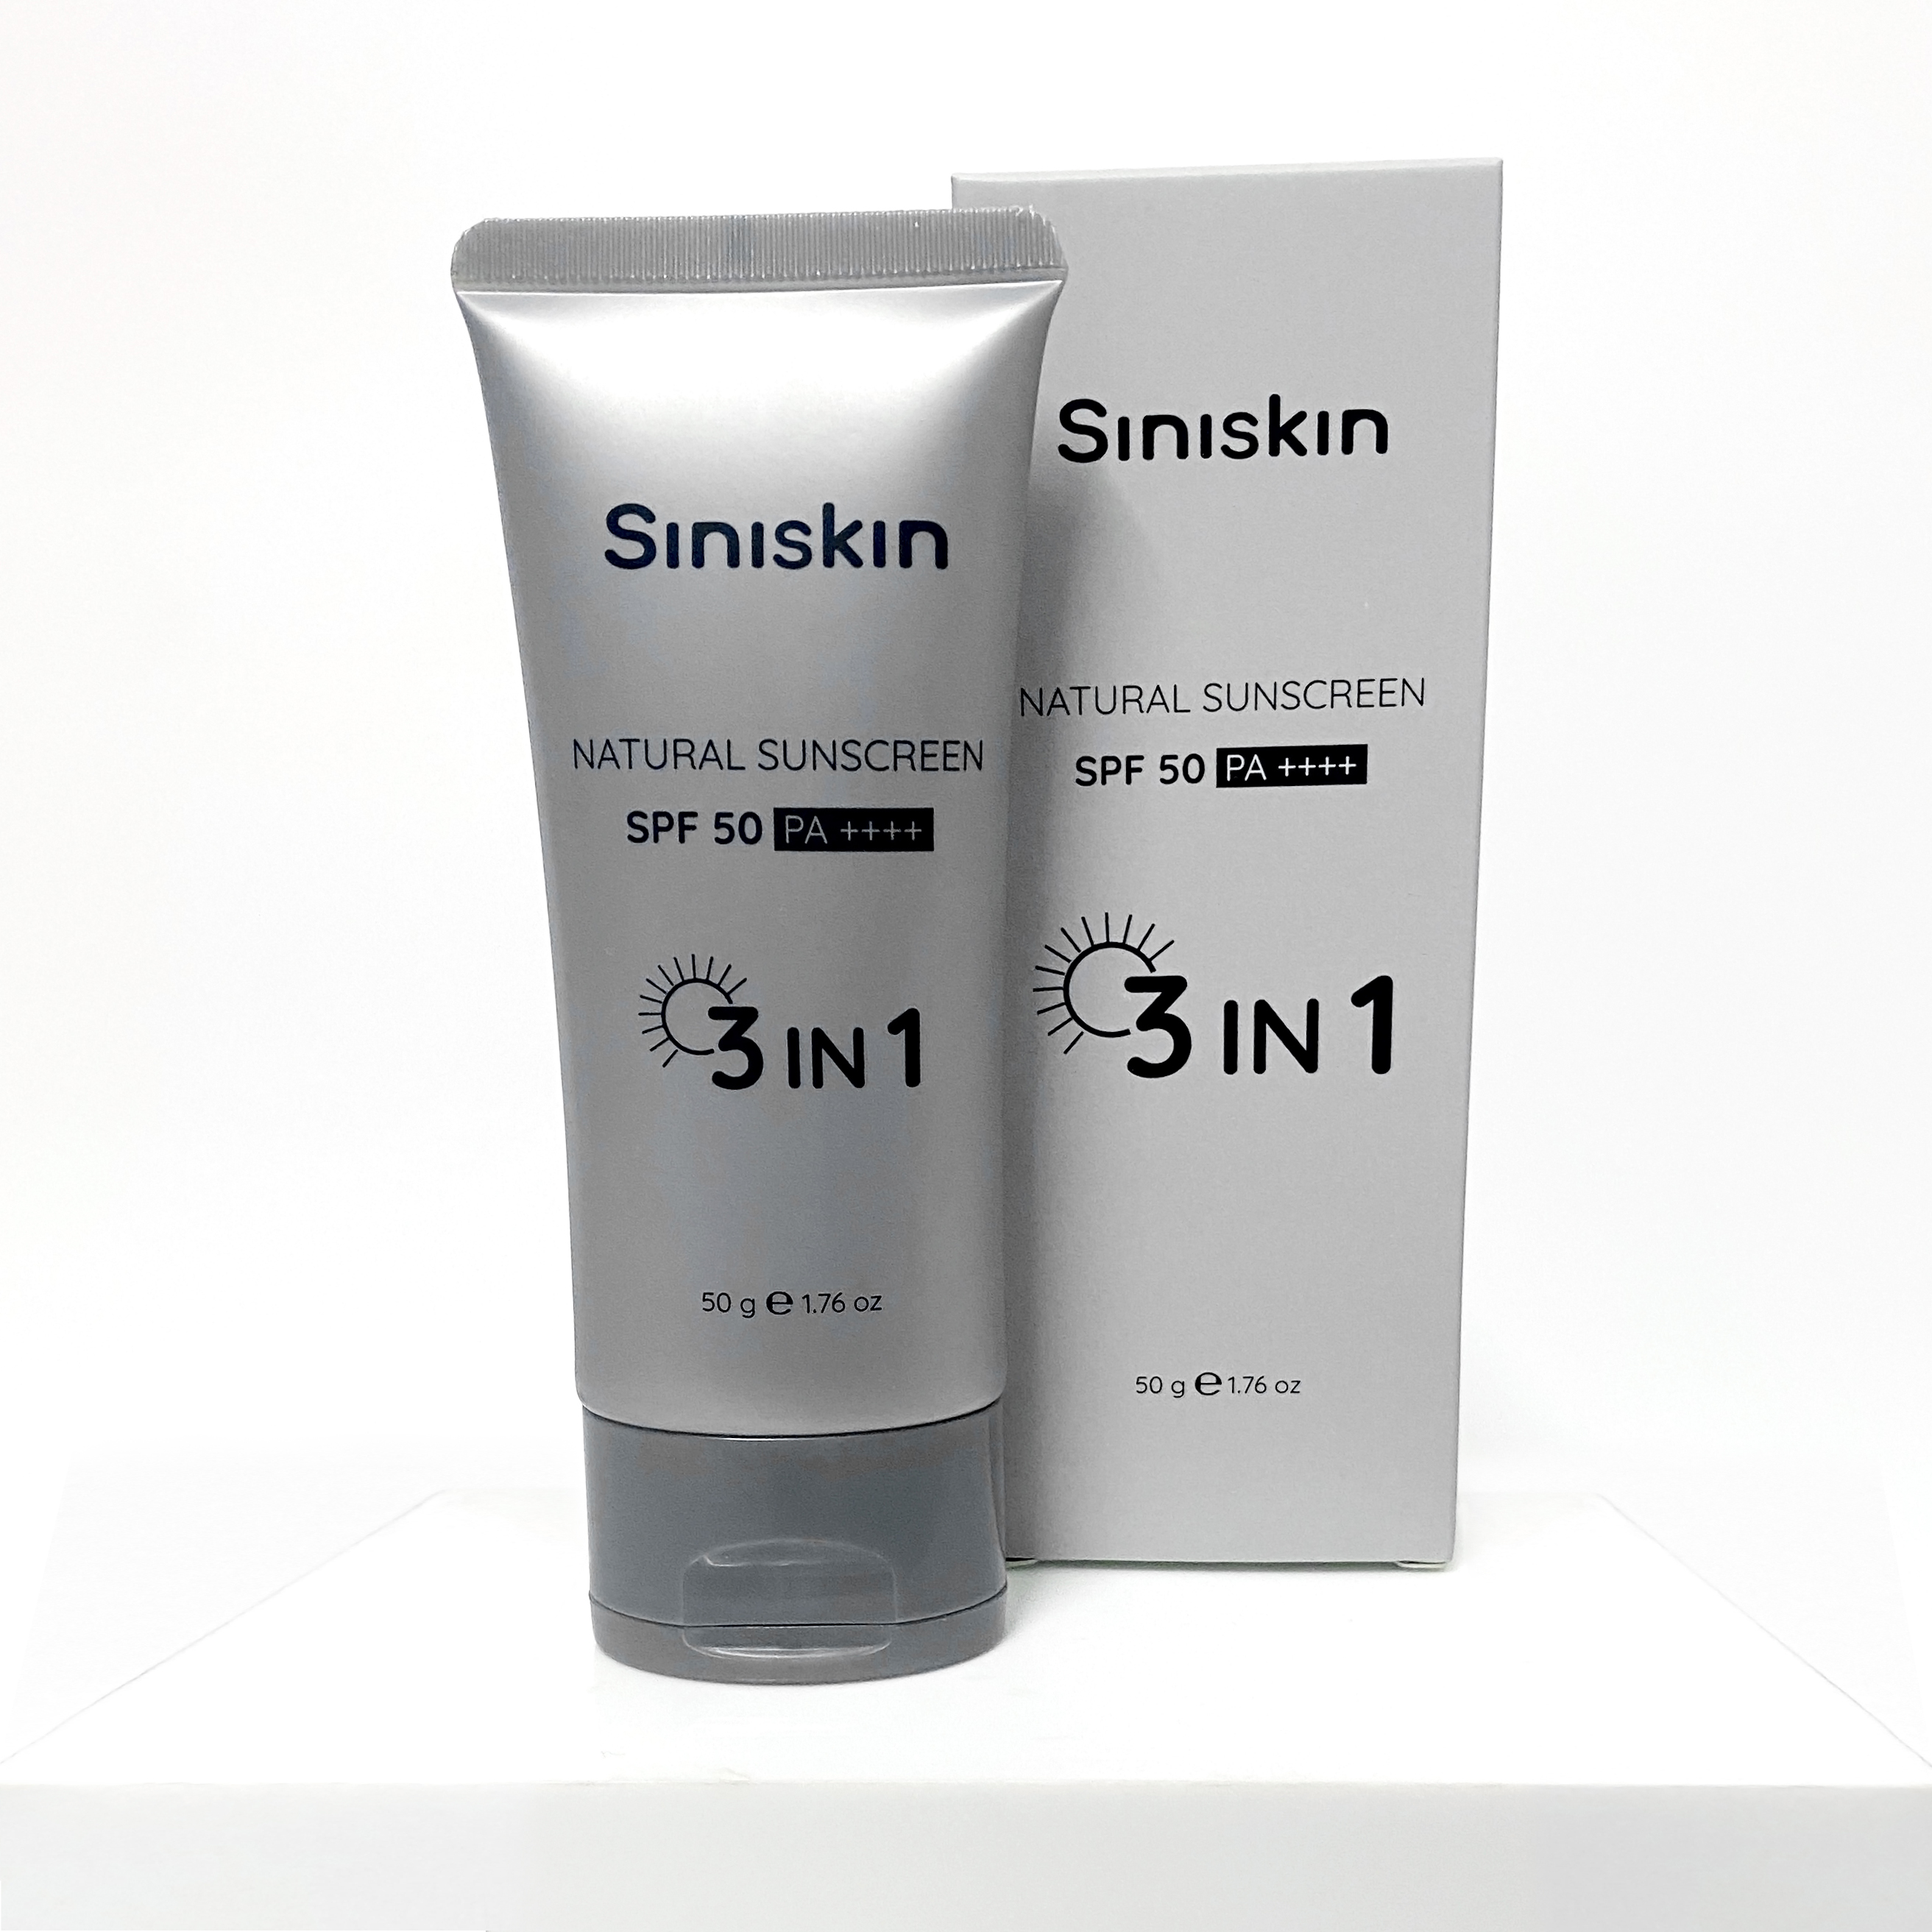 Kem chống nắng tự nhiên Siniskin Natural Sunscreen chất lượng 3in1 50g